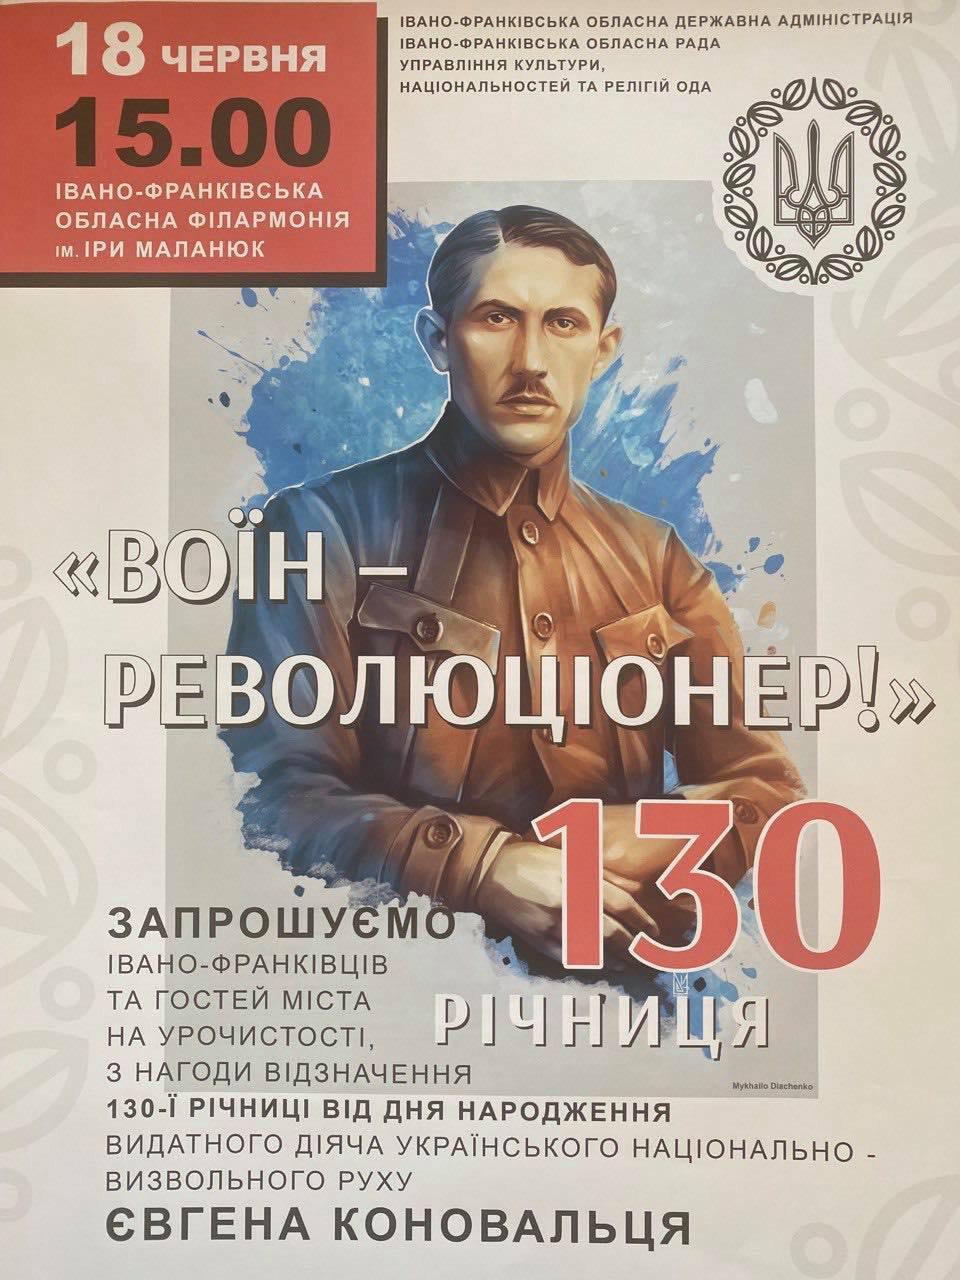 Урочистості з нагоди відзначення 130-річниці від дня народження Євгена Коновальця